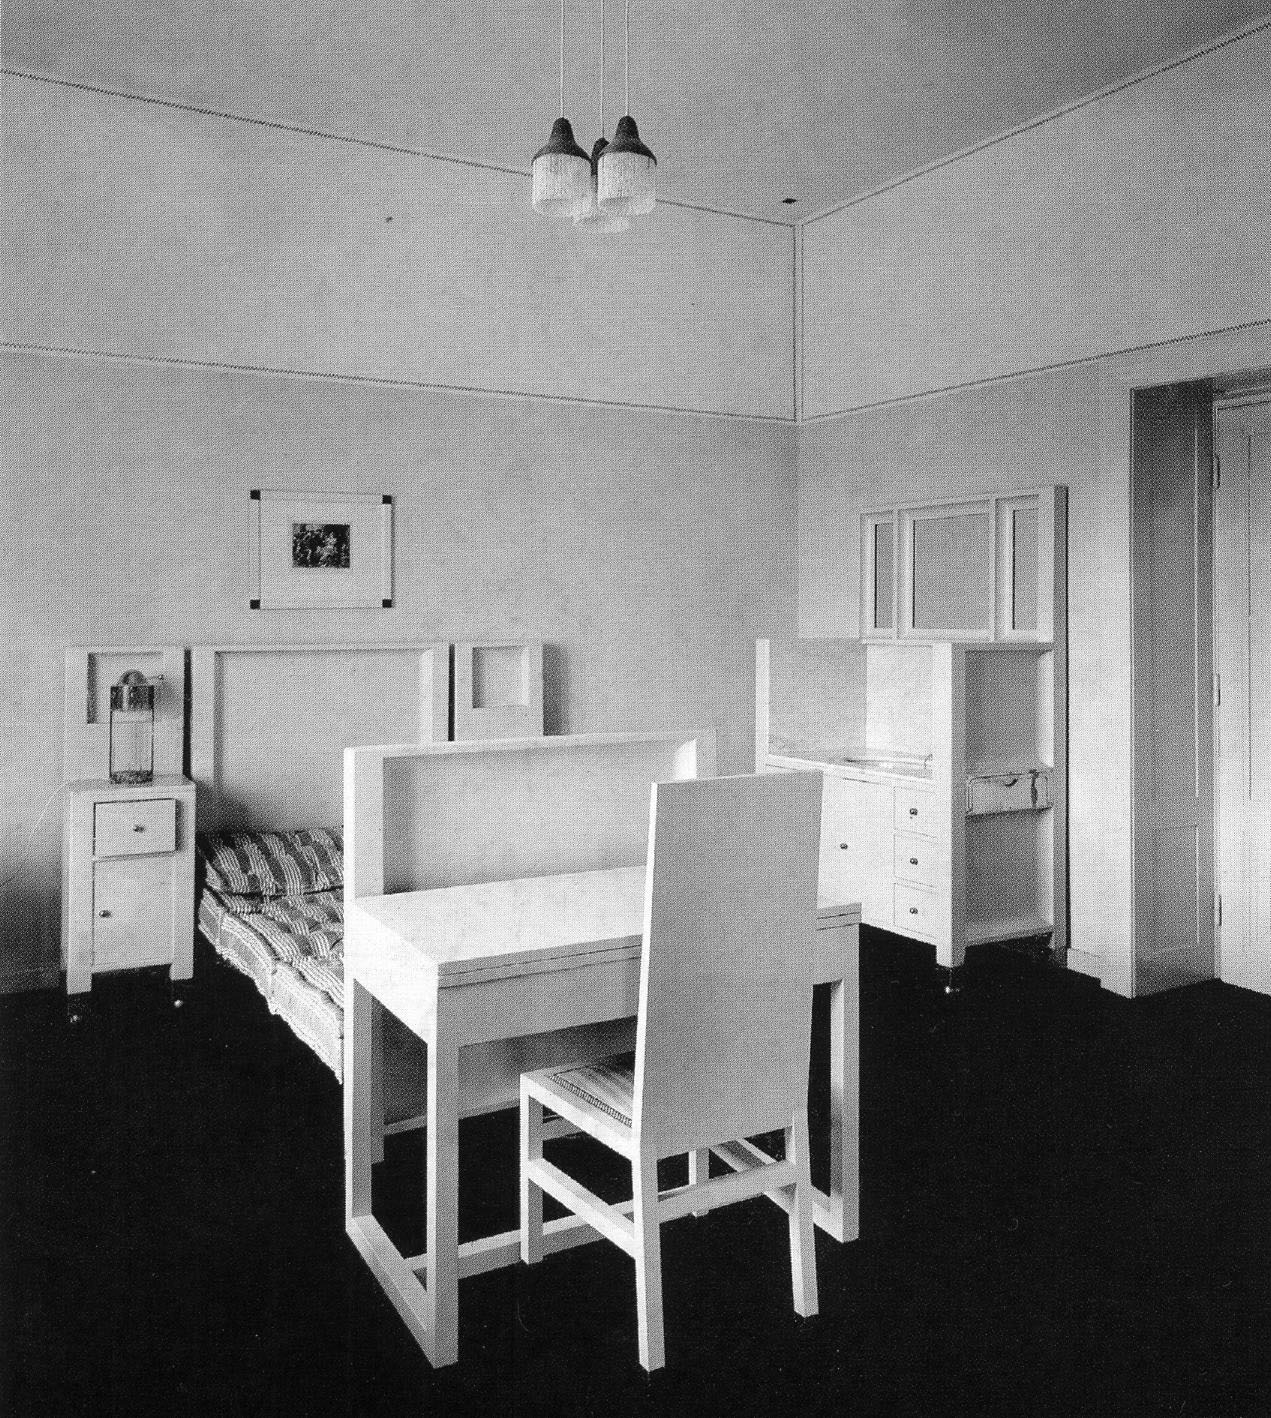 <p><strong>Josef Hoffmann, Purkersdorf Sanatorium, 1904</strong></p>
                    <p>August Sarnitz «Нoffmann», Taschen, p. 48</p>